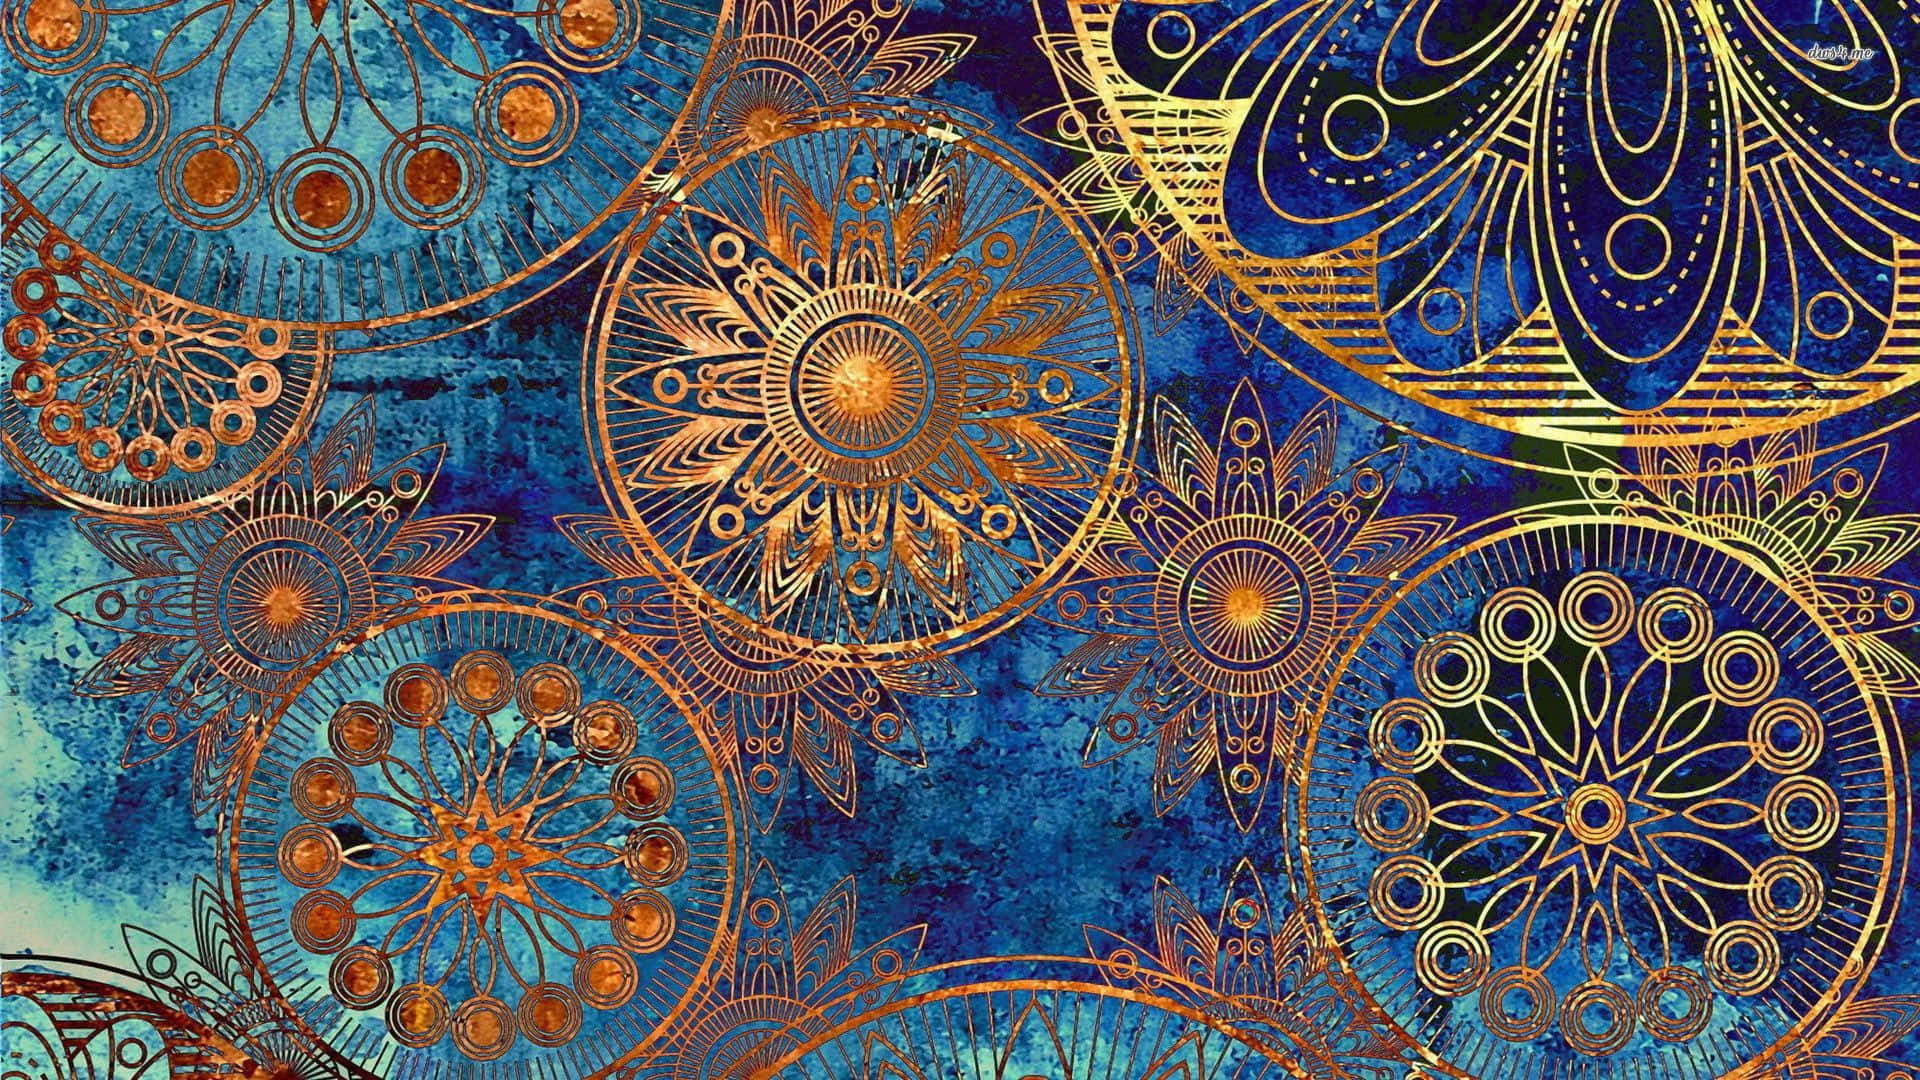 Einabstraktes Gemälde In Blau Und Gold Mit Vielen Kreisen. Wallpaper